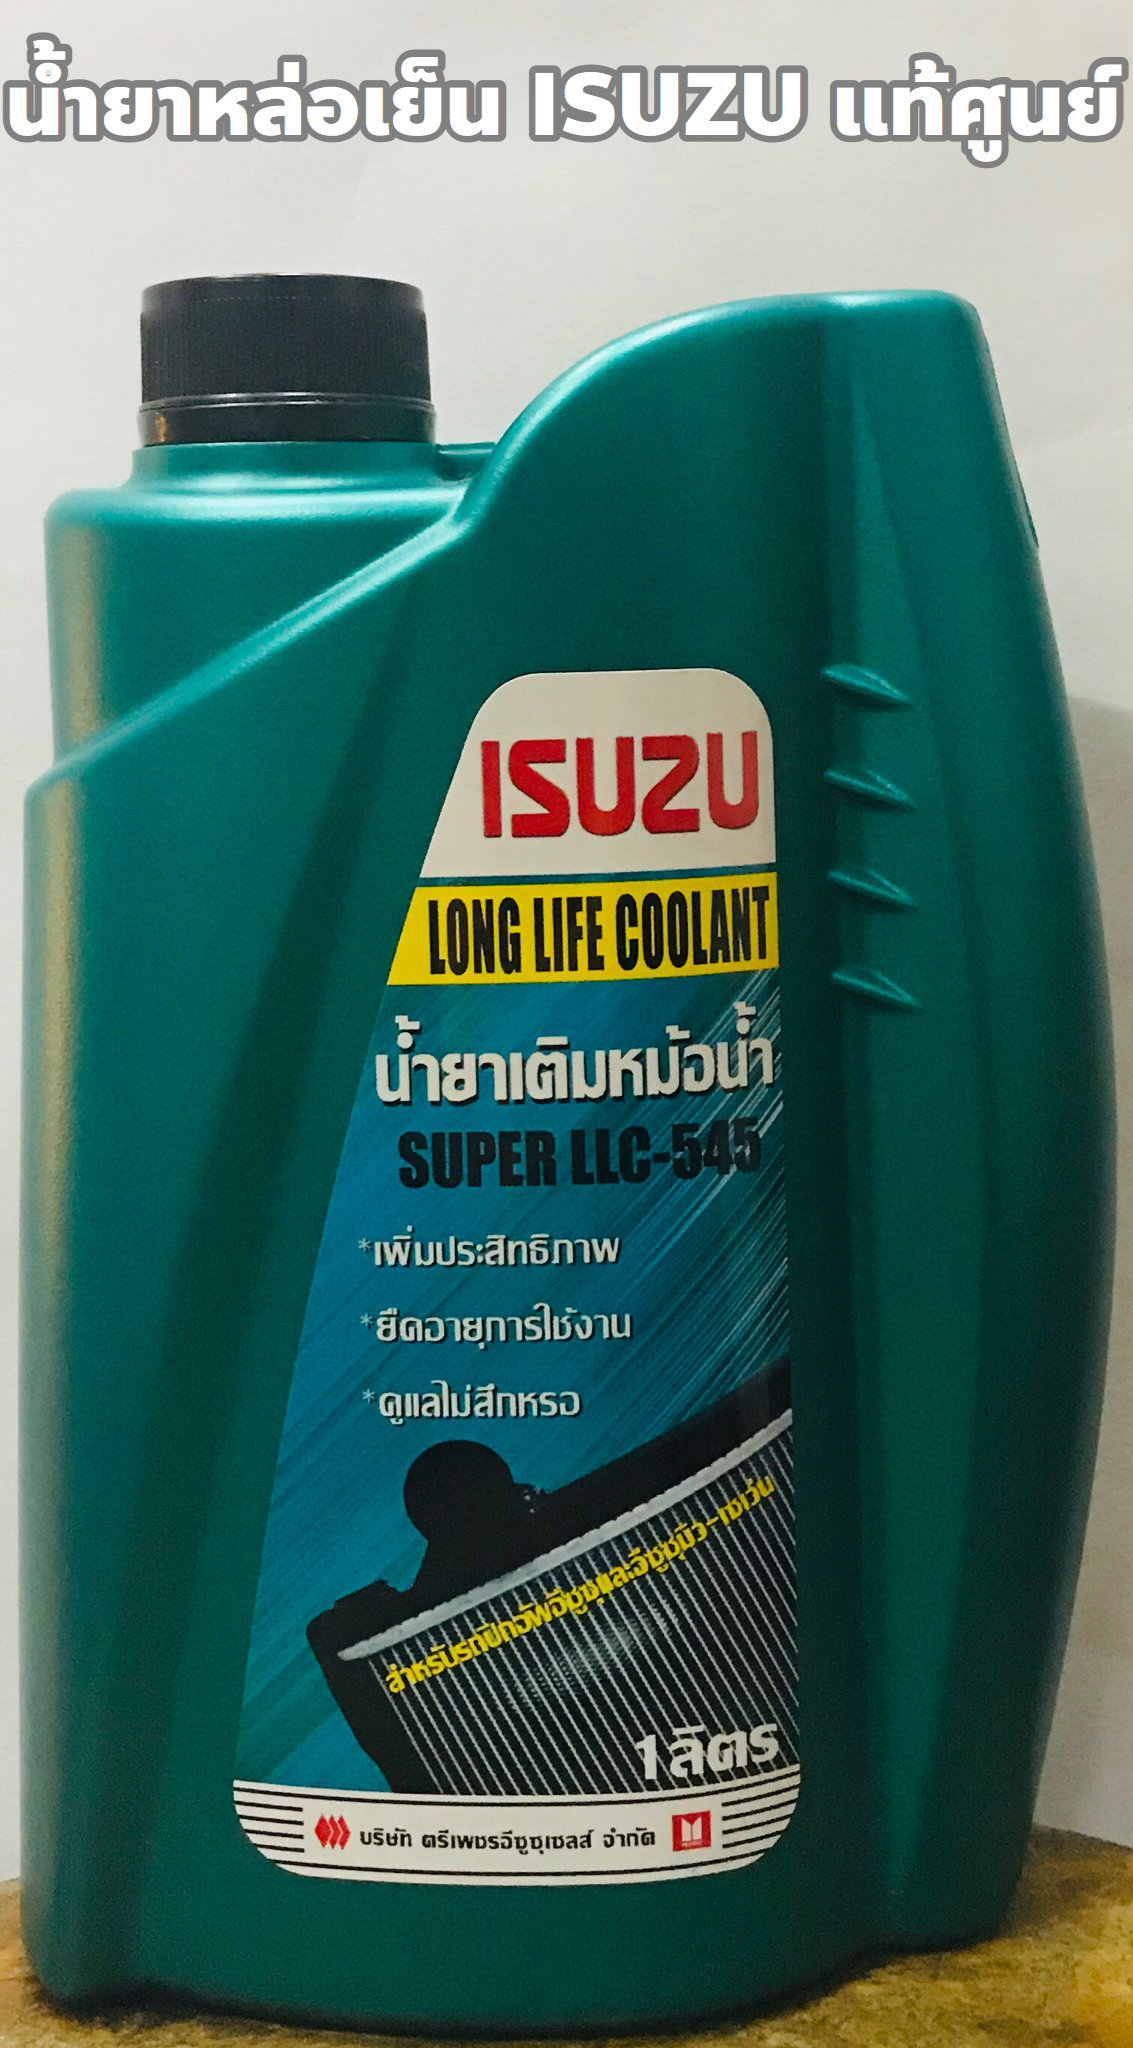 Isuzu น้ำยาหล่อเย็นหม้อน้ำ น้ำยาหม้อน้ำ Isuzu super LLC-545 แท้เบิกศูนย์ ขนาด1ลิตร